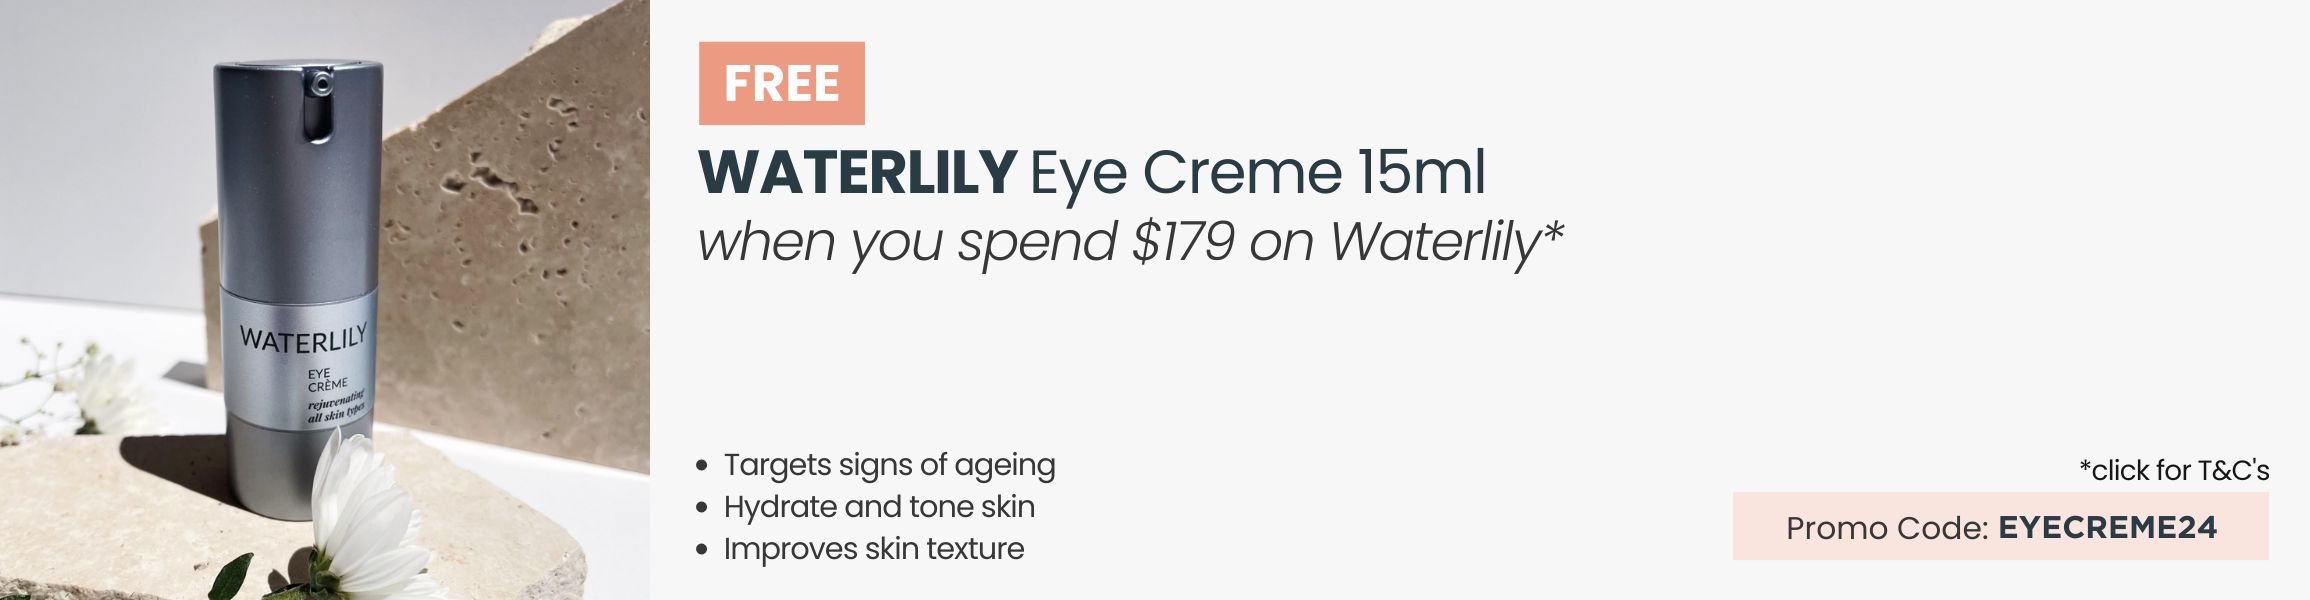 FREE Waterlily Eye Creme 15ml. Min spend $179 on Waterliy. Promo Code EYECREME24